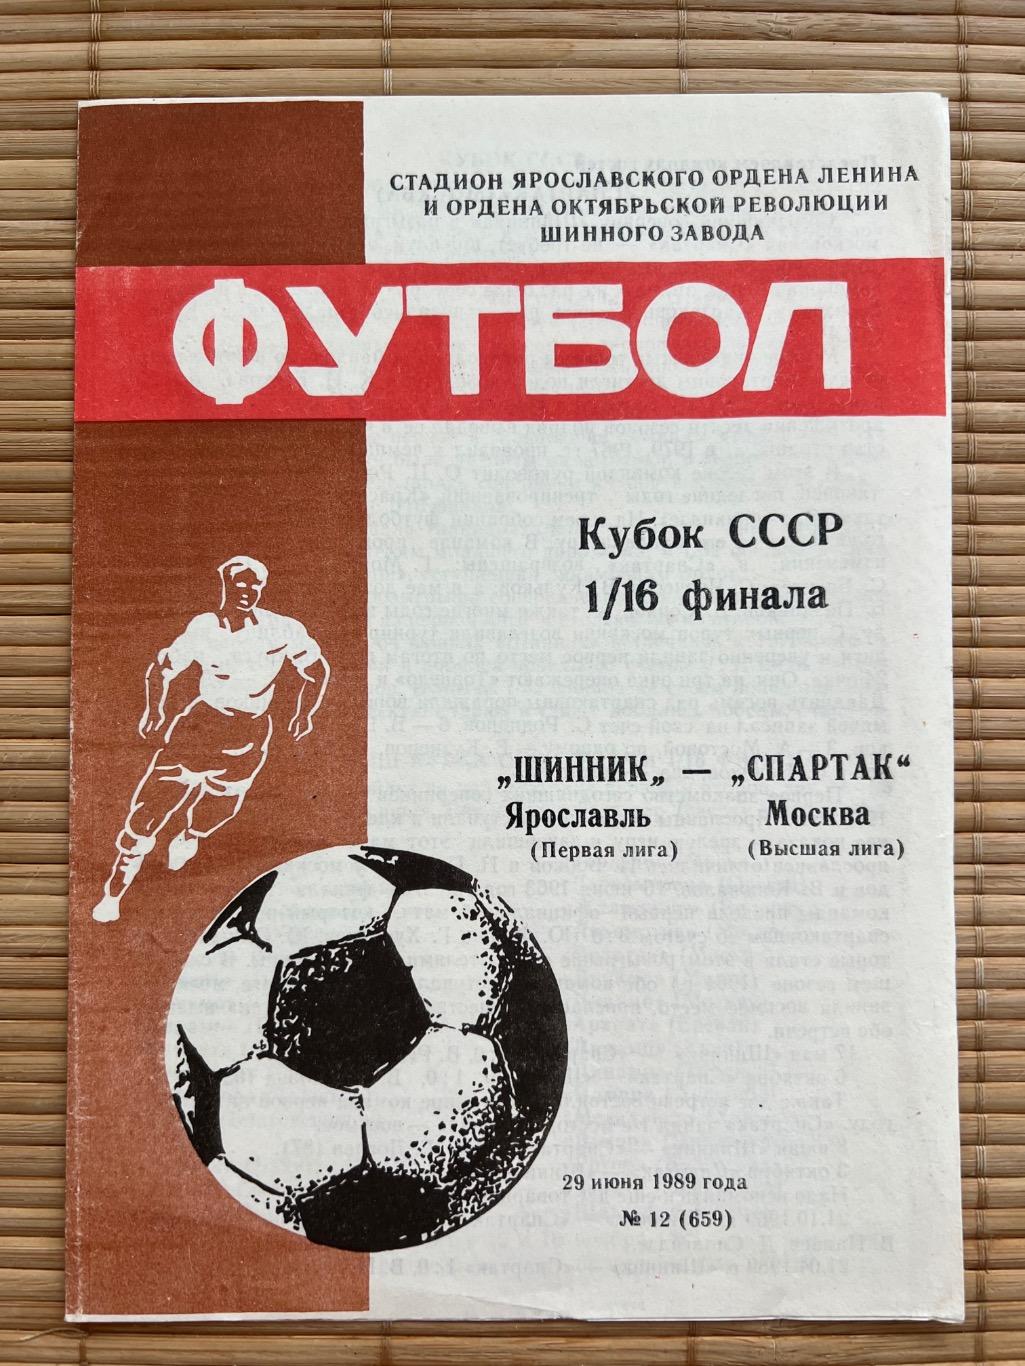 Шинник Ярославль - Спартак Москва 1989 кубок